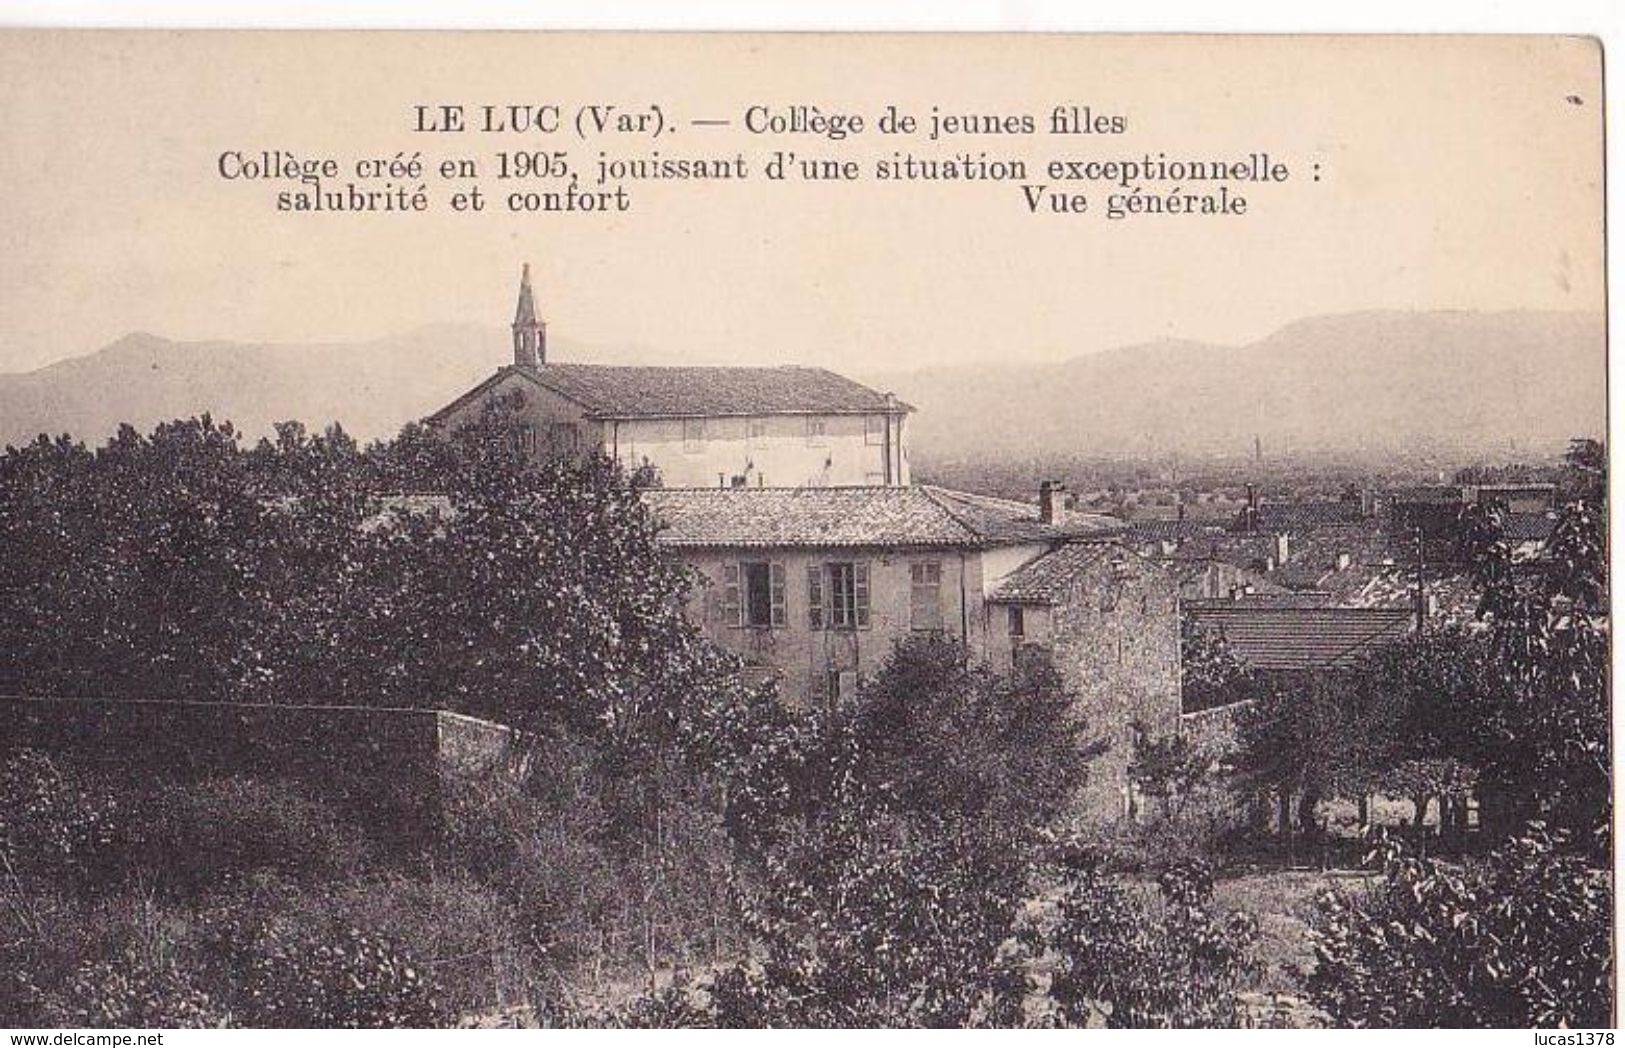 83 / LE LUC / COLLEGE DE JEUNES FILLES / CREE EN 1905 / JOUISSANT D UNE SITUATION EXCEPTIONNELLE / RARE - Le Luc